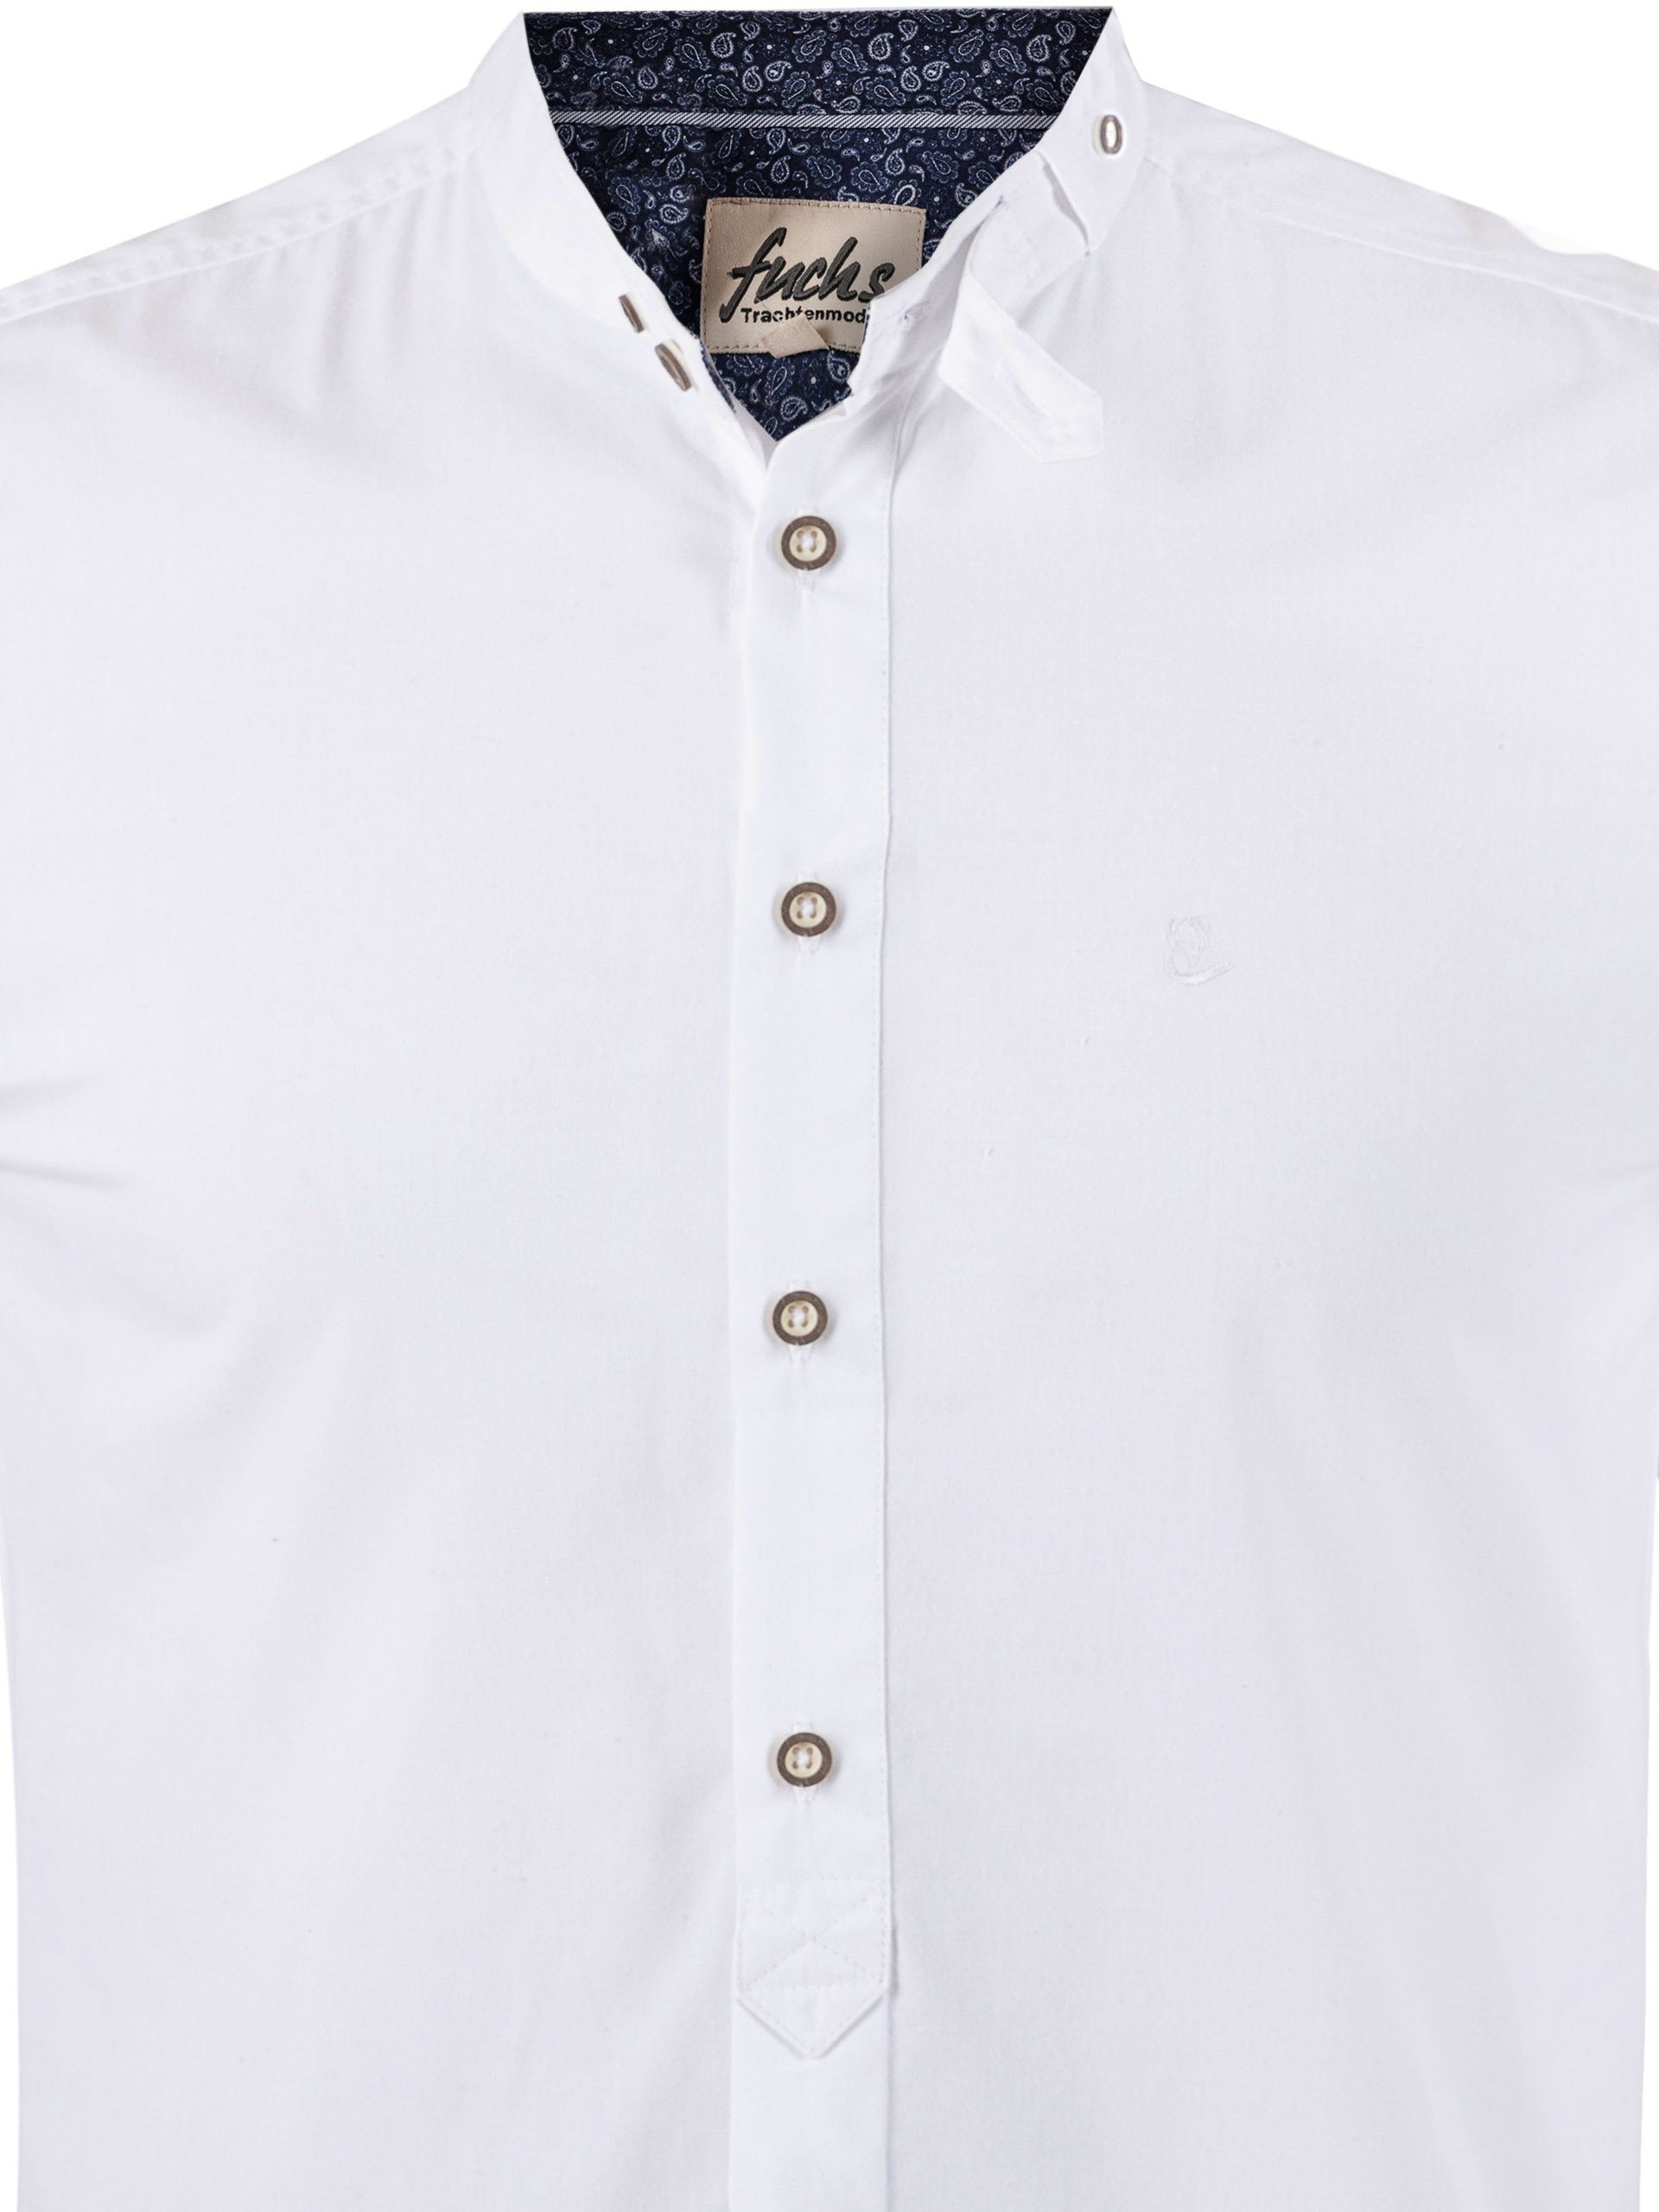 FUCHS Trachtenhemd Hemd Albert Stehkragen mit weiß-marine